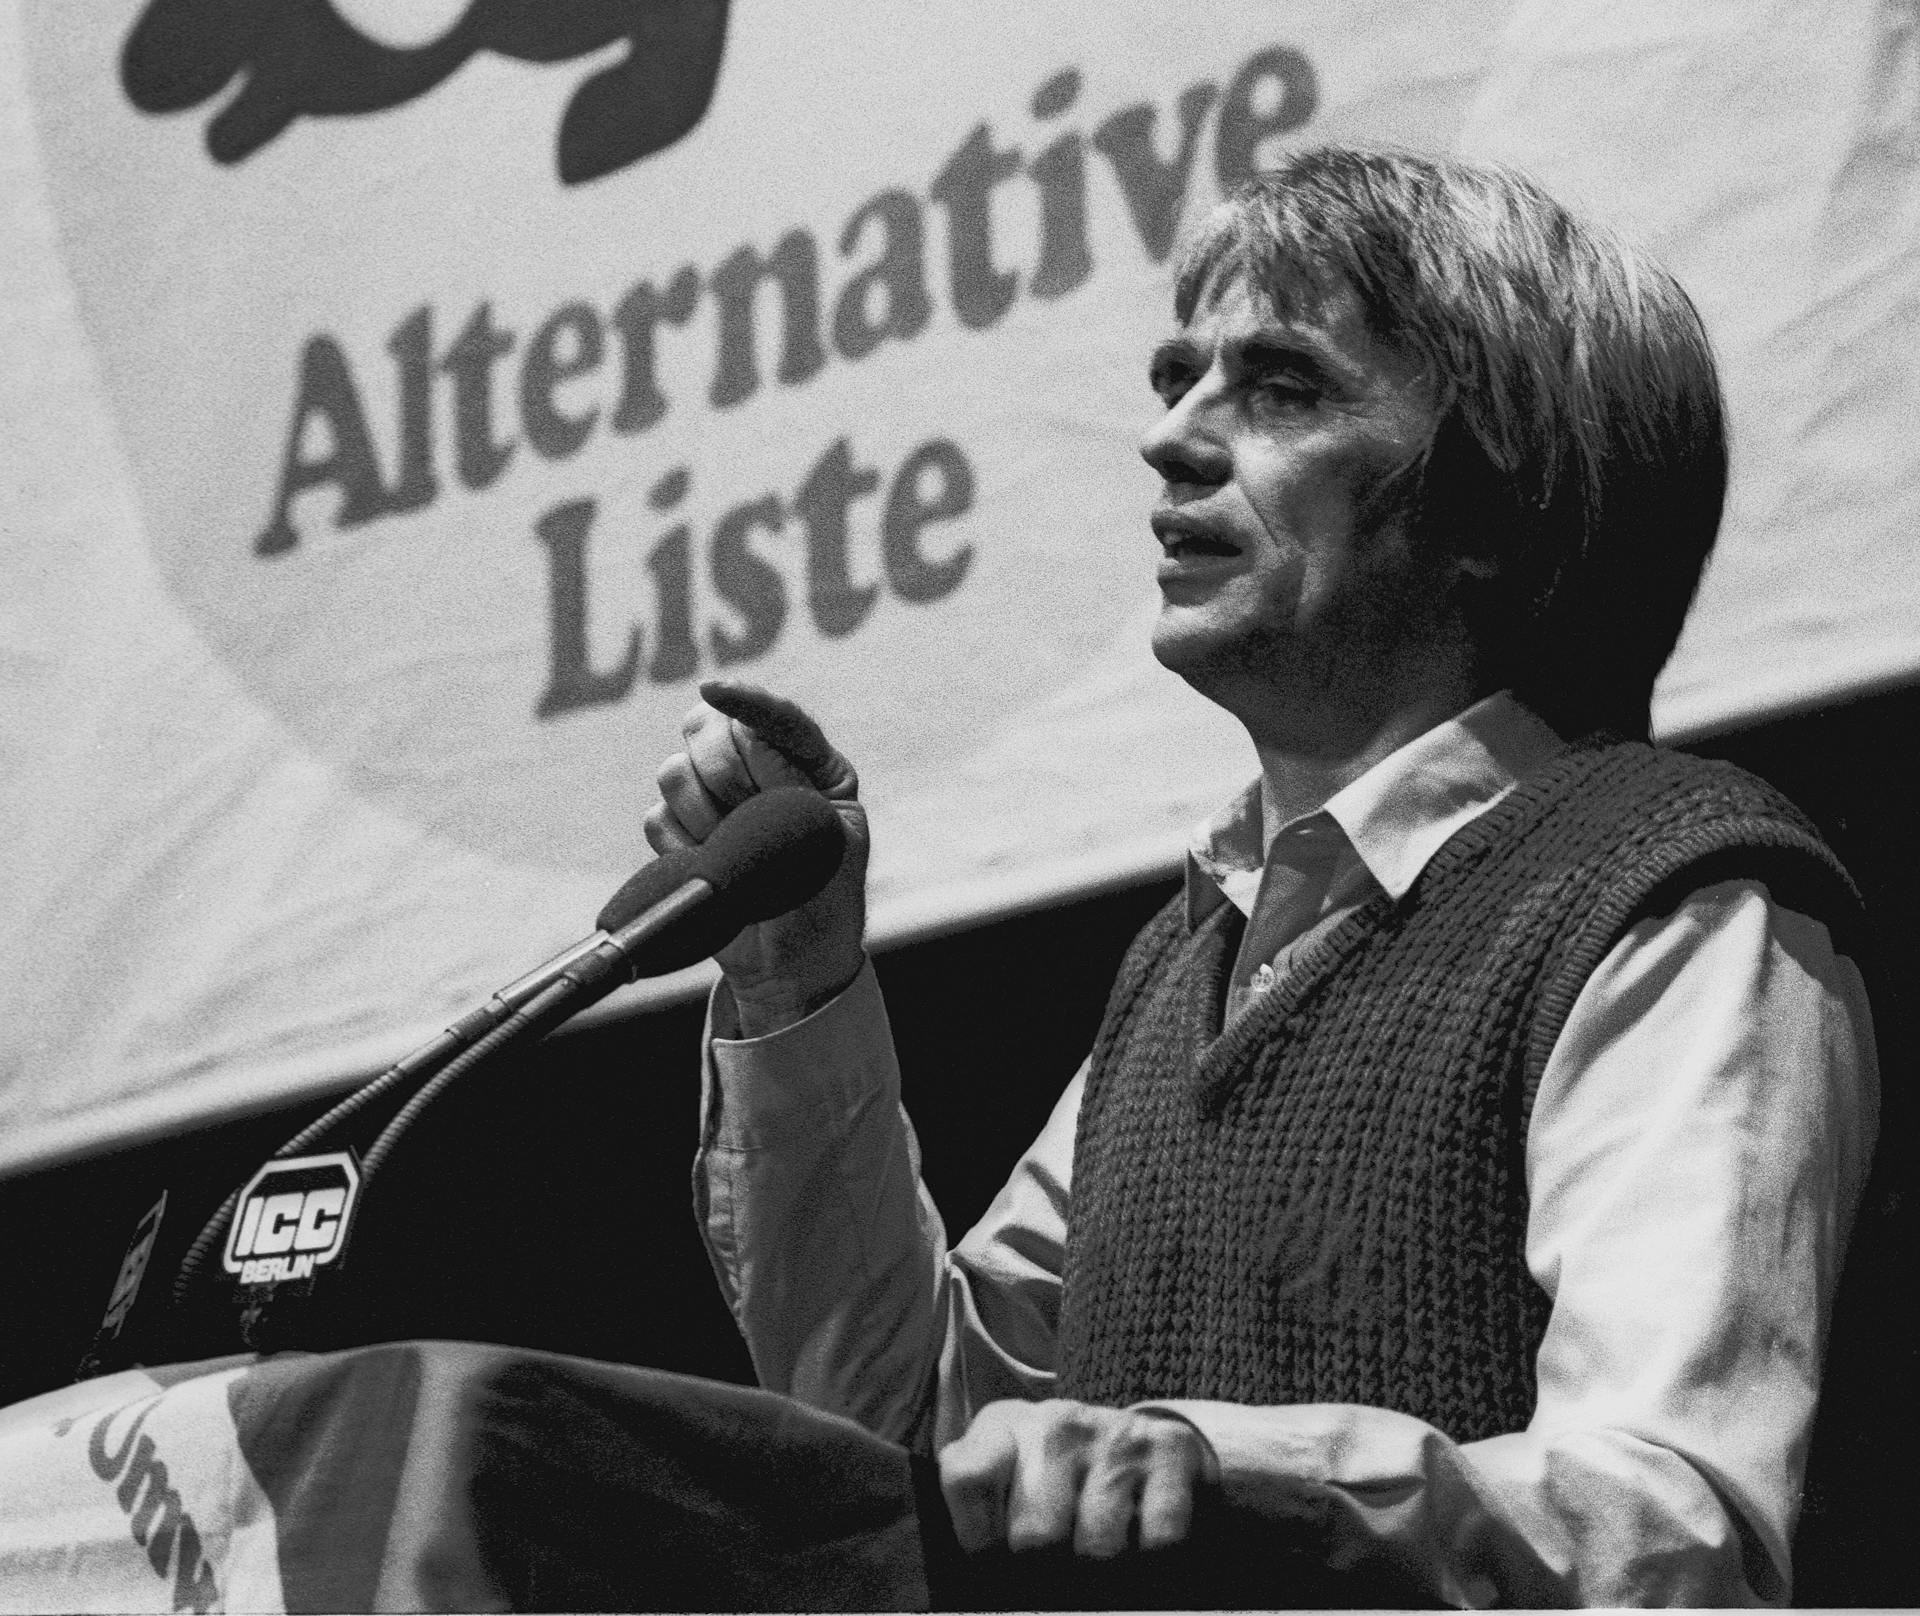 alte Schwarz-Weiß Fotografie von einem jungen Hans-Christian Ströbele, der hinter einem Redner*innenpult steht. Im HIntergrund ein Banner mit der Aufschrift "Alternative Liste"